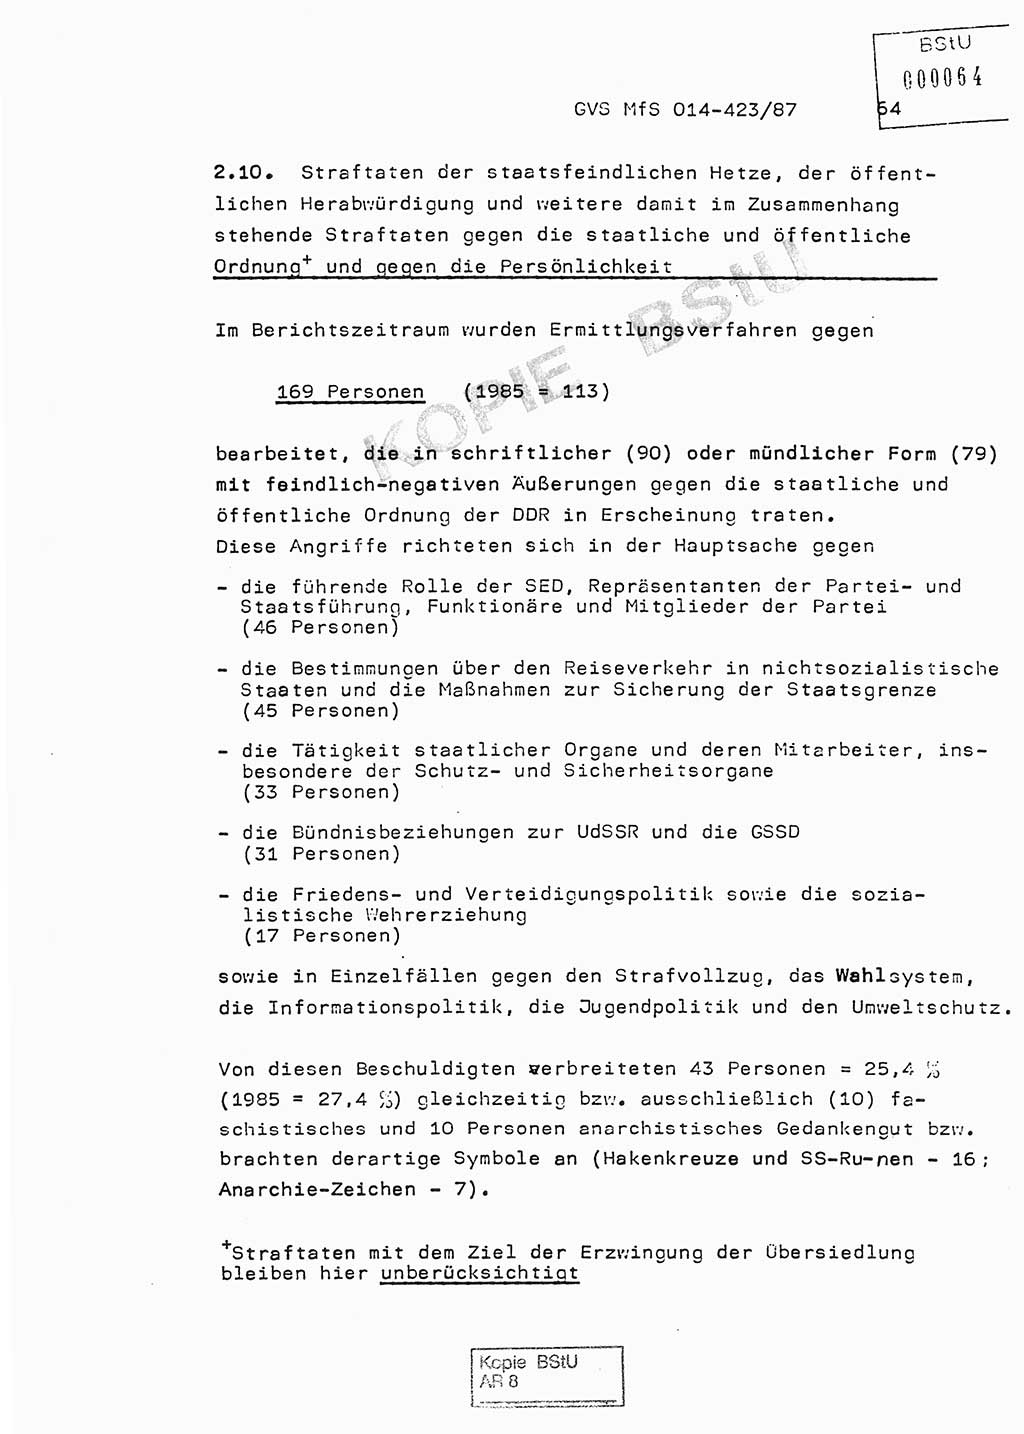 Jahresbericht der Hauptabteilung (HA) Ⅸ 1986, Einschätzung der Wirksamkeit der Untersuchungsarbeit im Jahre 1986, Ministerium für Staatssicherheit (MfS) der Deutschen Demokratischen Republik (DDR), Hauptabteilung Ⅸ, Geheime Verschlußsache (GVS) o014-423/87, Berlin 1987, Seite 64 (Einsch. MfS DDR HA Ⅸ GVS o014-423/87 1986, S. 64)